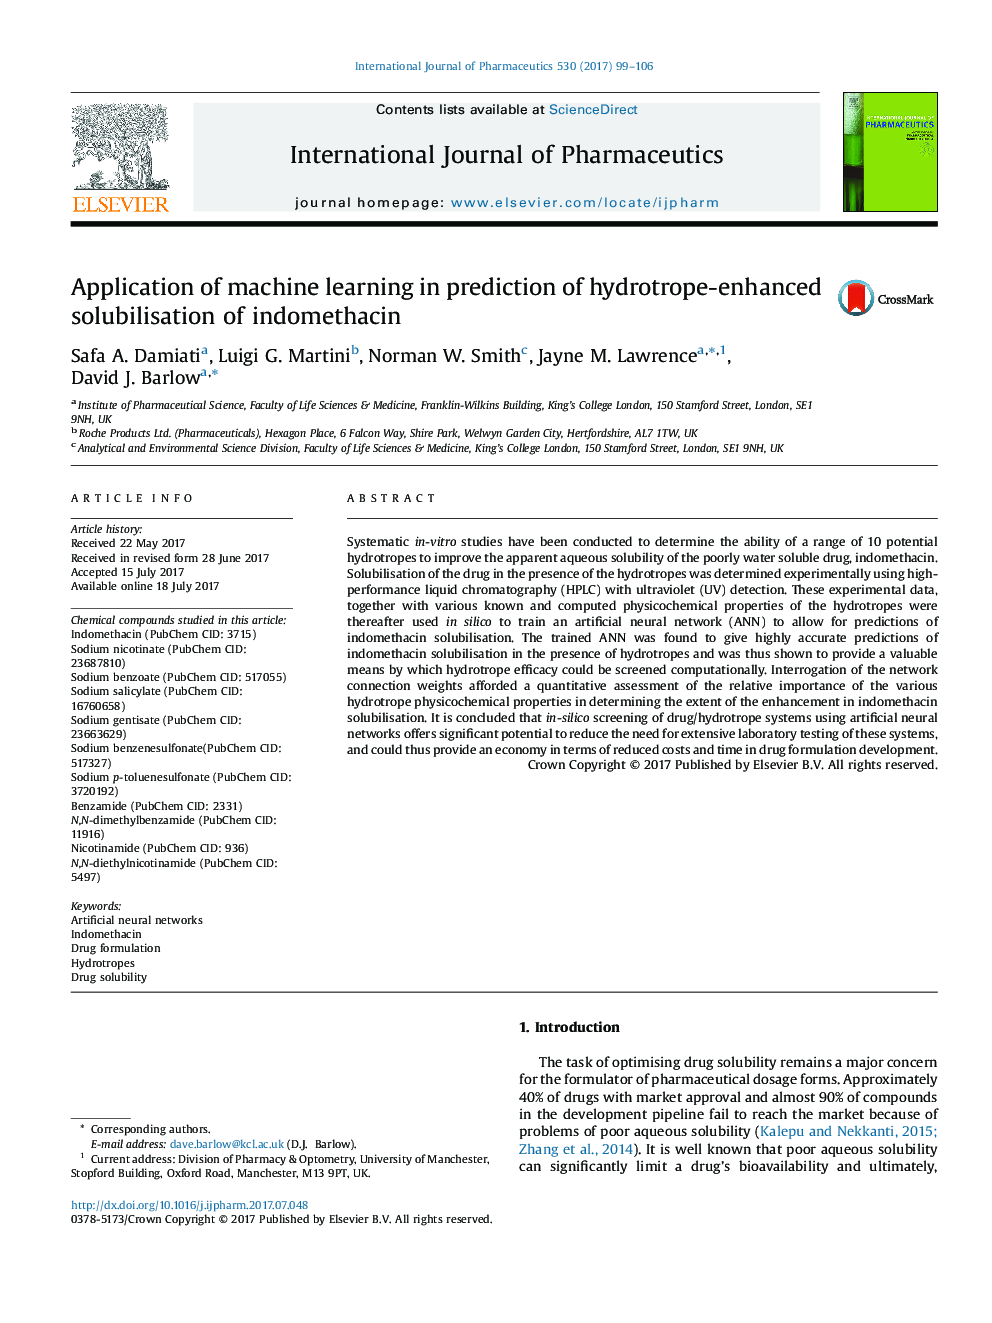 استفاده از یادگیری ماشین در پیش بینی محلولسازی هیدروتروم از اندومتاسین 